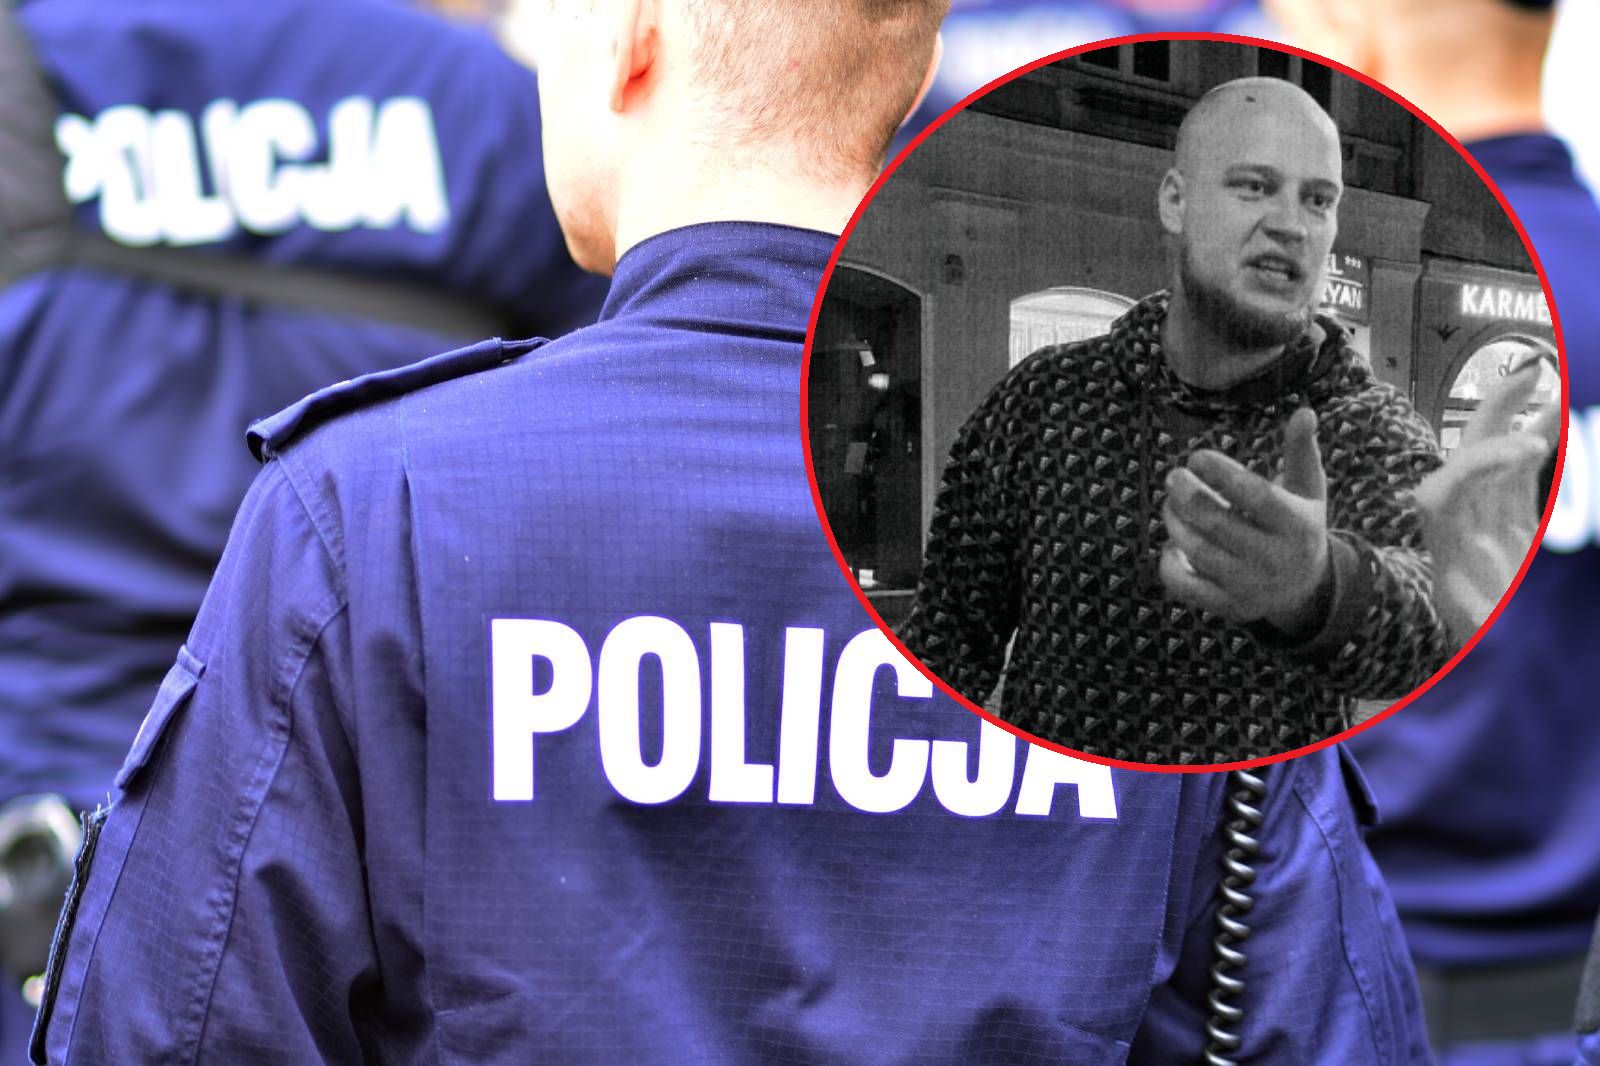 Uderzył kobietę w Krakowie. Policja opublikowała jego zdjęcie